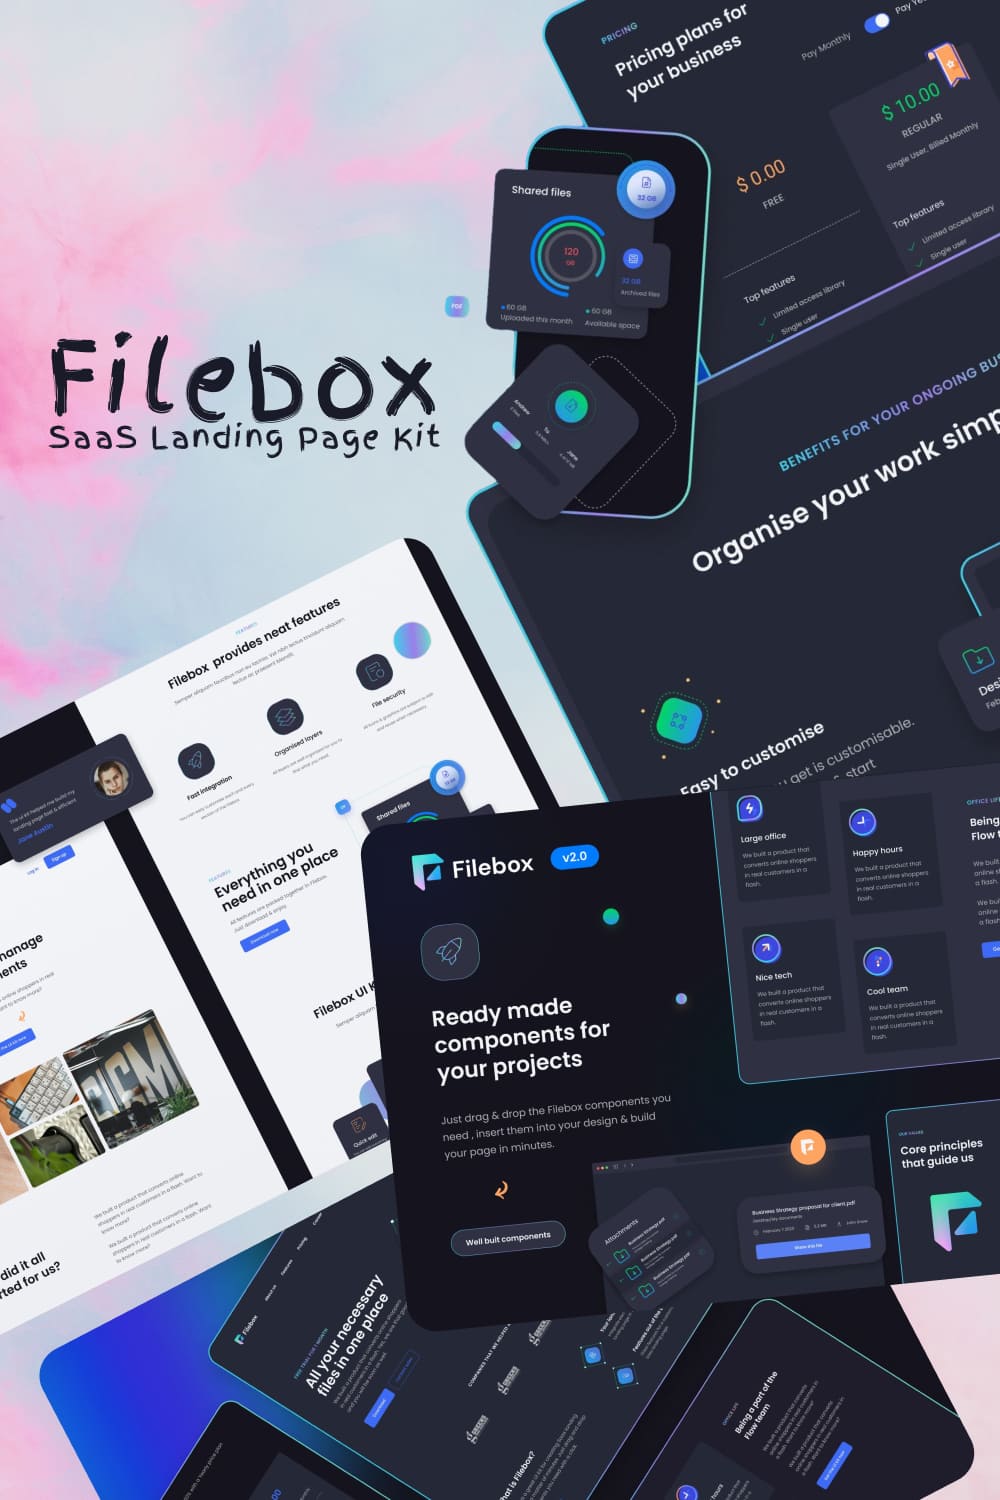 Filebox SaaS Landing Page Kit pinterest image.